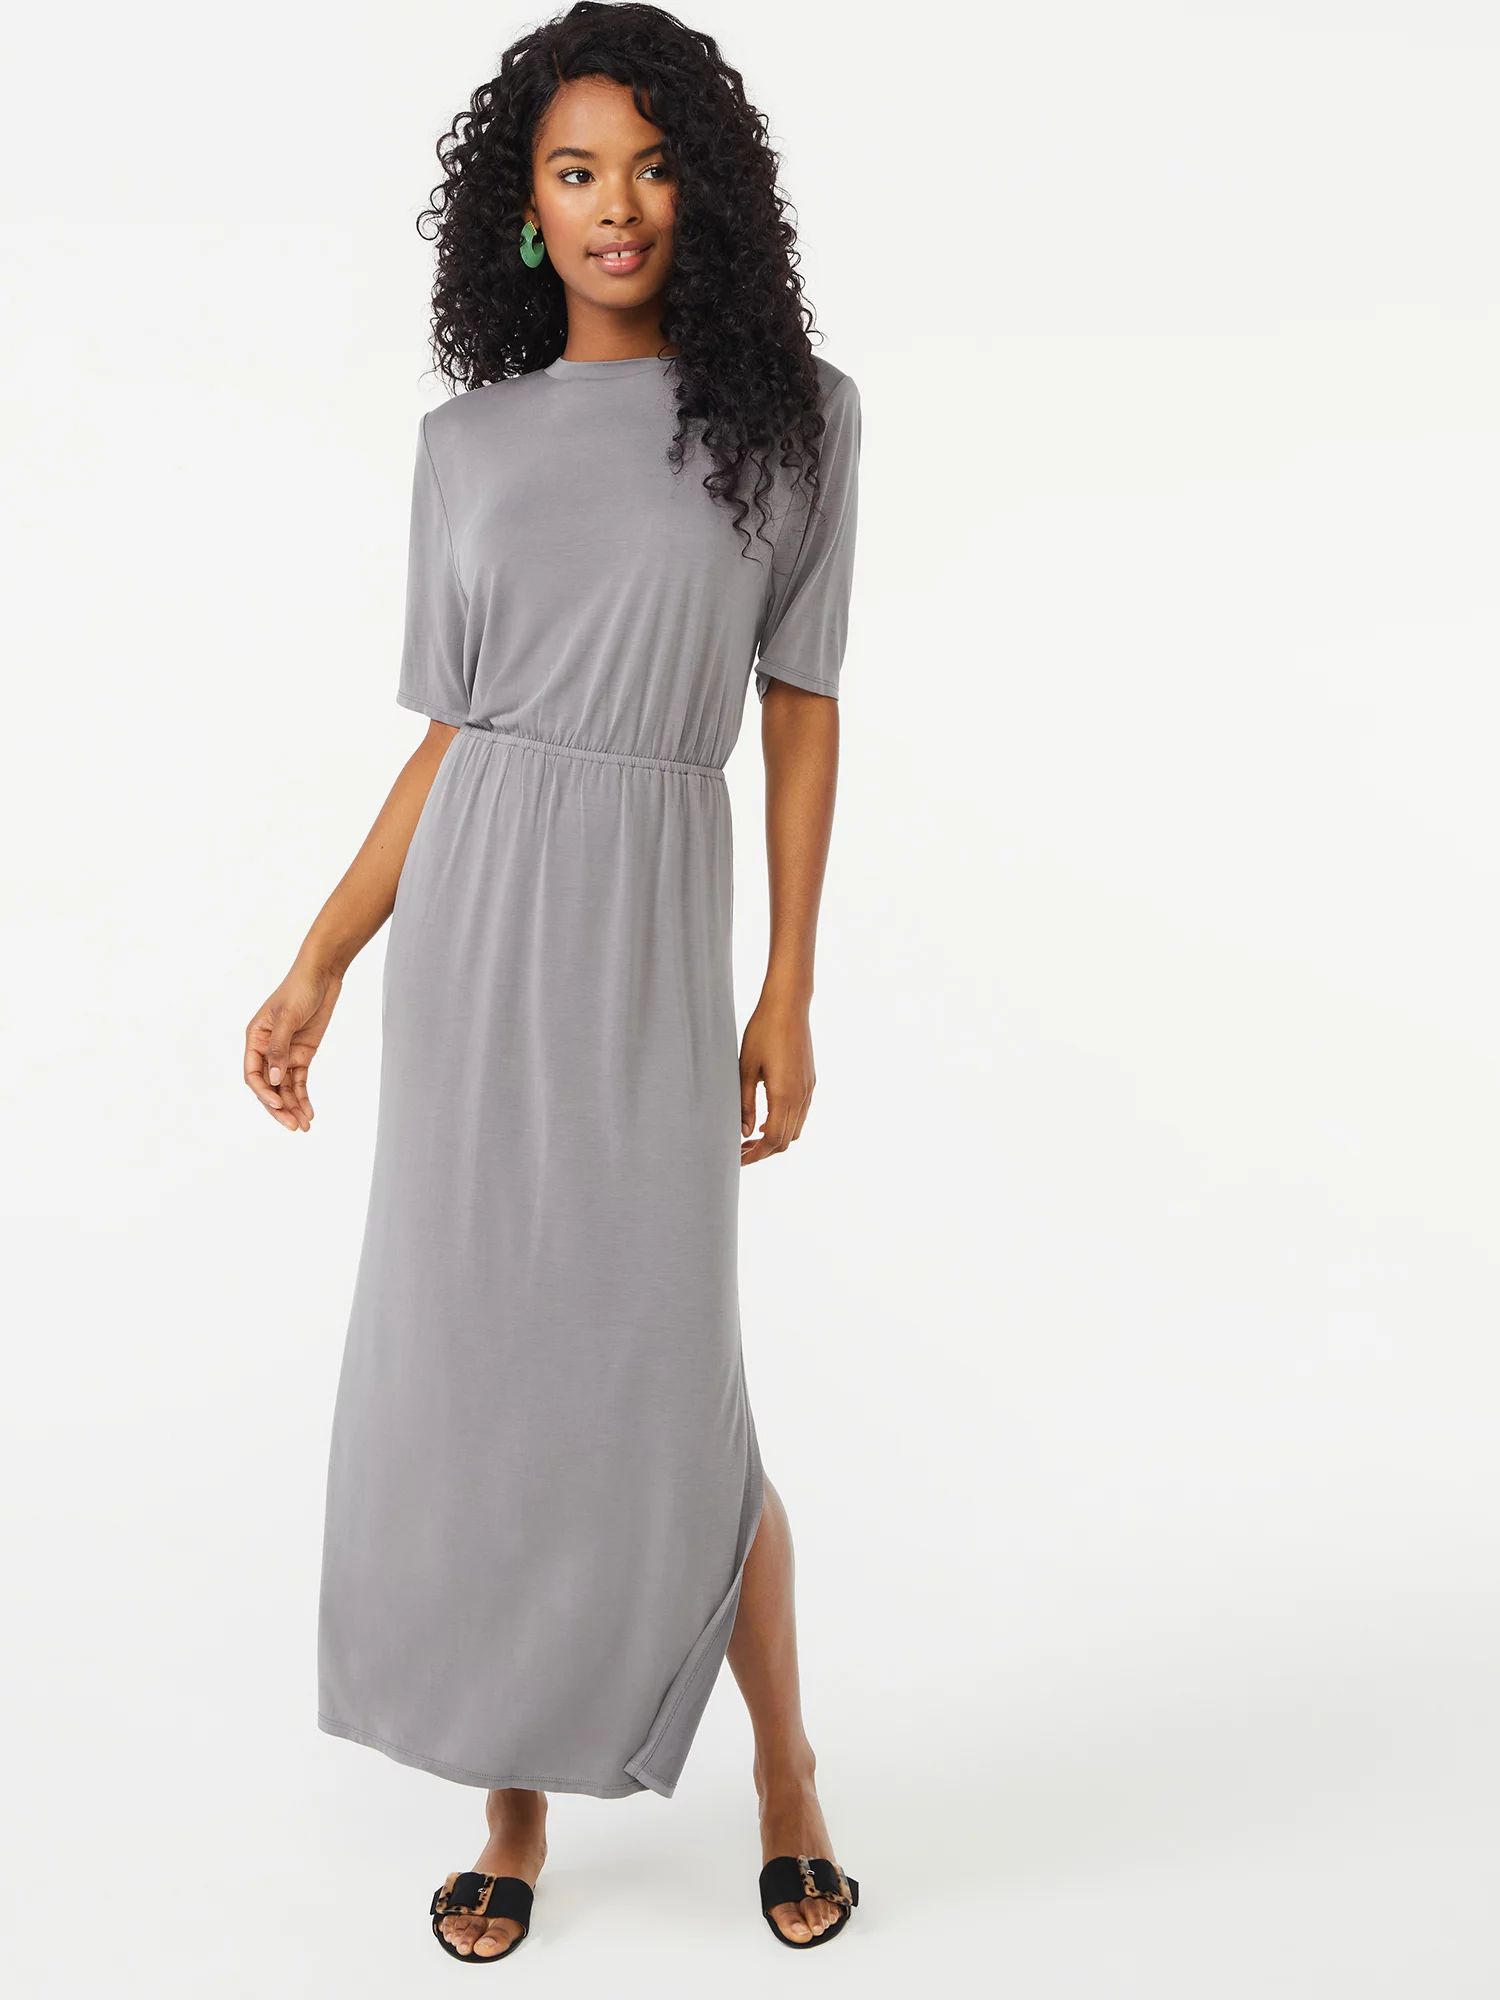 Scoop Women's Shoulder Pad Dress - Walmart.com | Walmart (US)